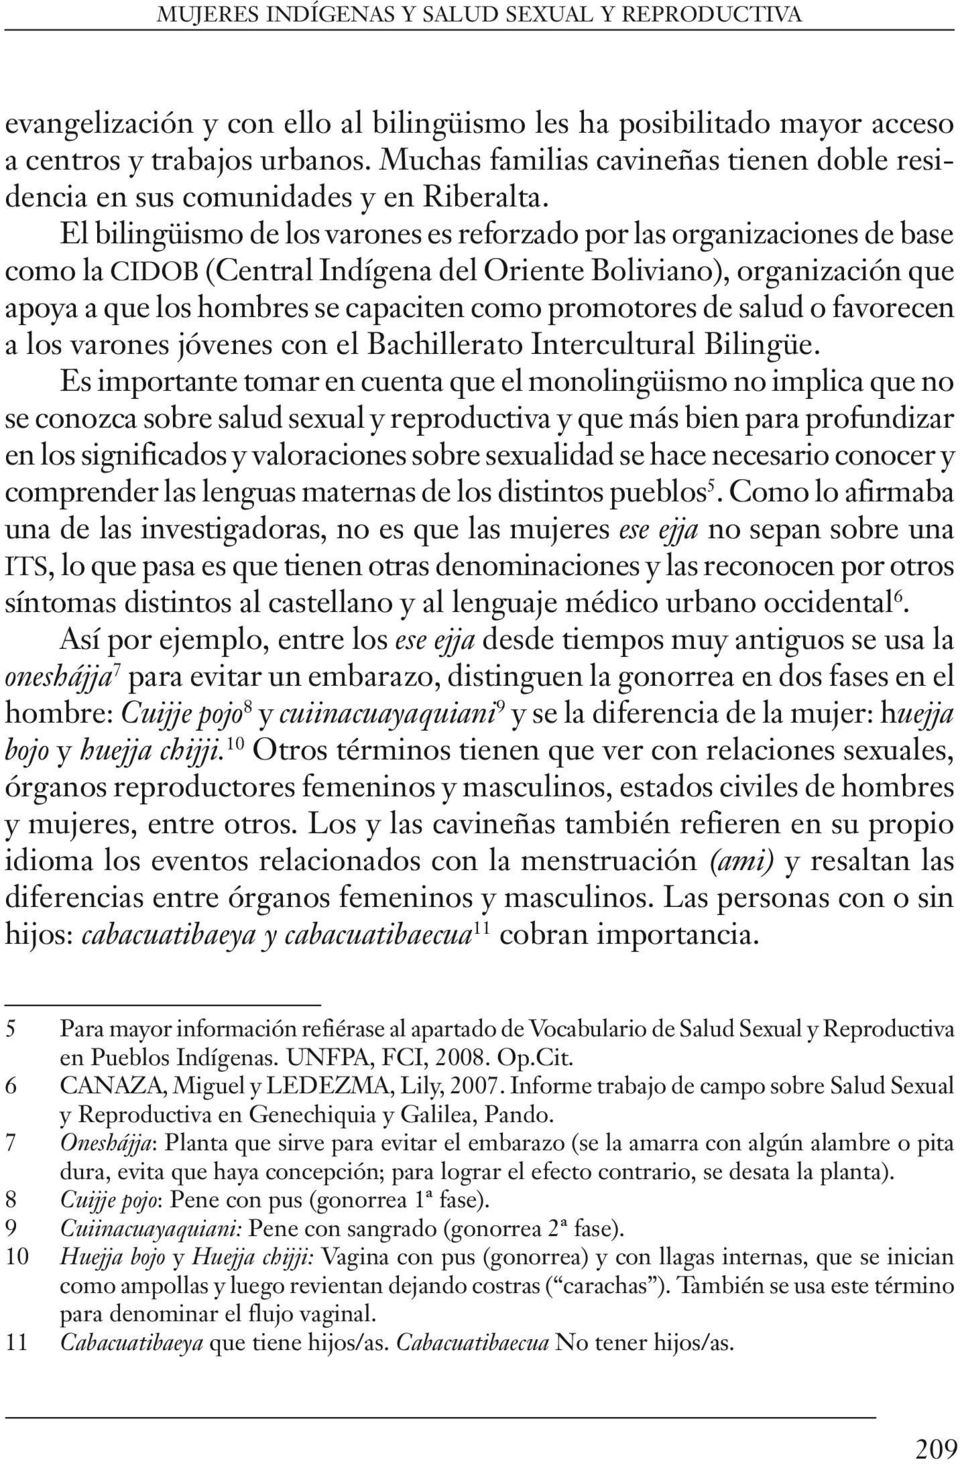 El bilingüismo de los varones es reforzado por las organizaciones de base como la cidob (Central Indígena del Oriente Boliviano), organización que apoya a que los hombres se capaciten como promotores